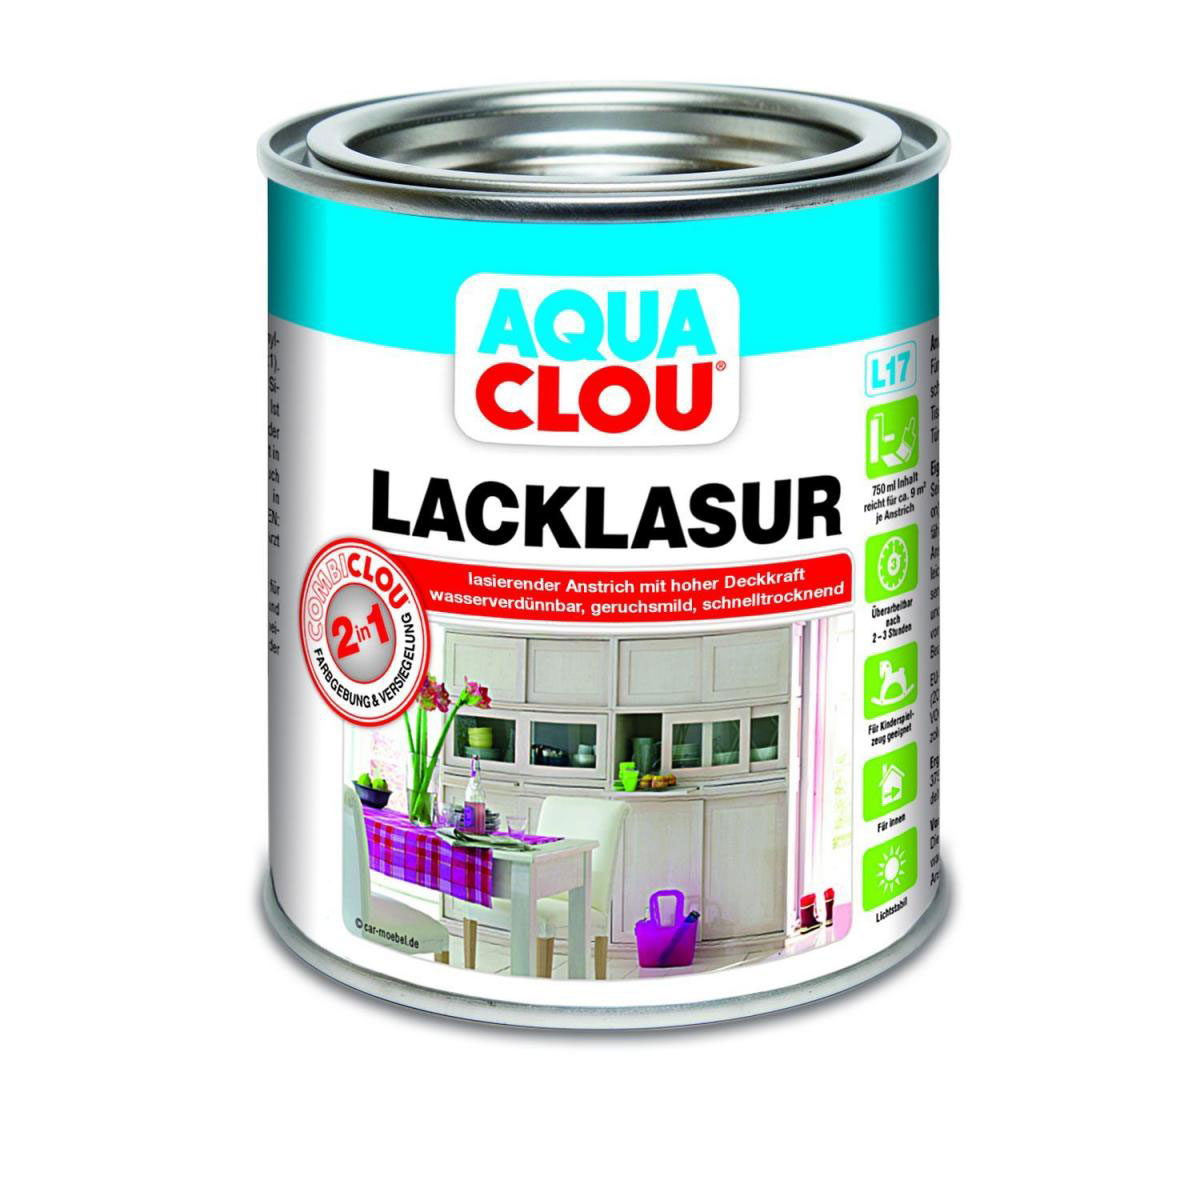 Clou L17 Aqua Lacklasur „Palisander“, 750 ml